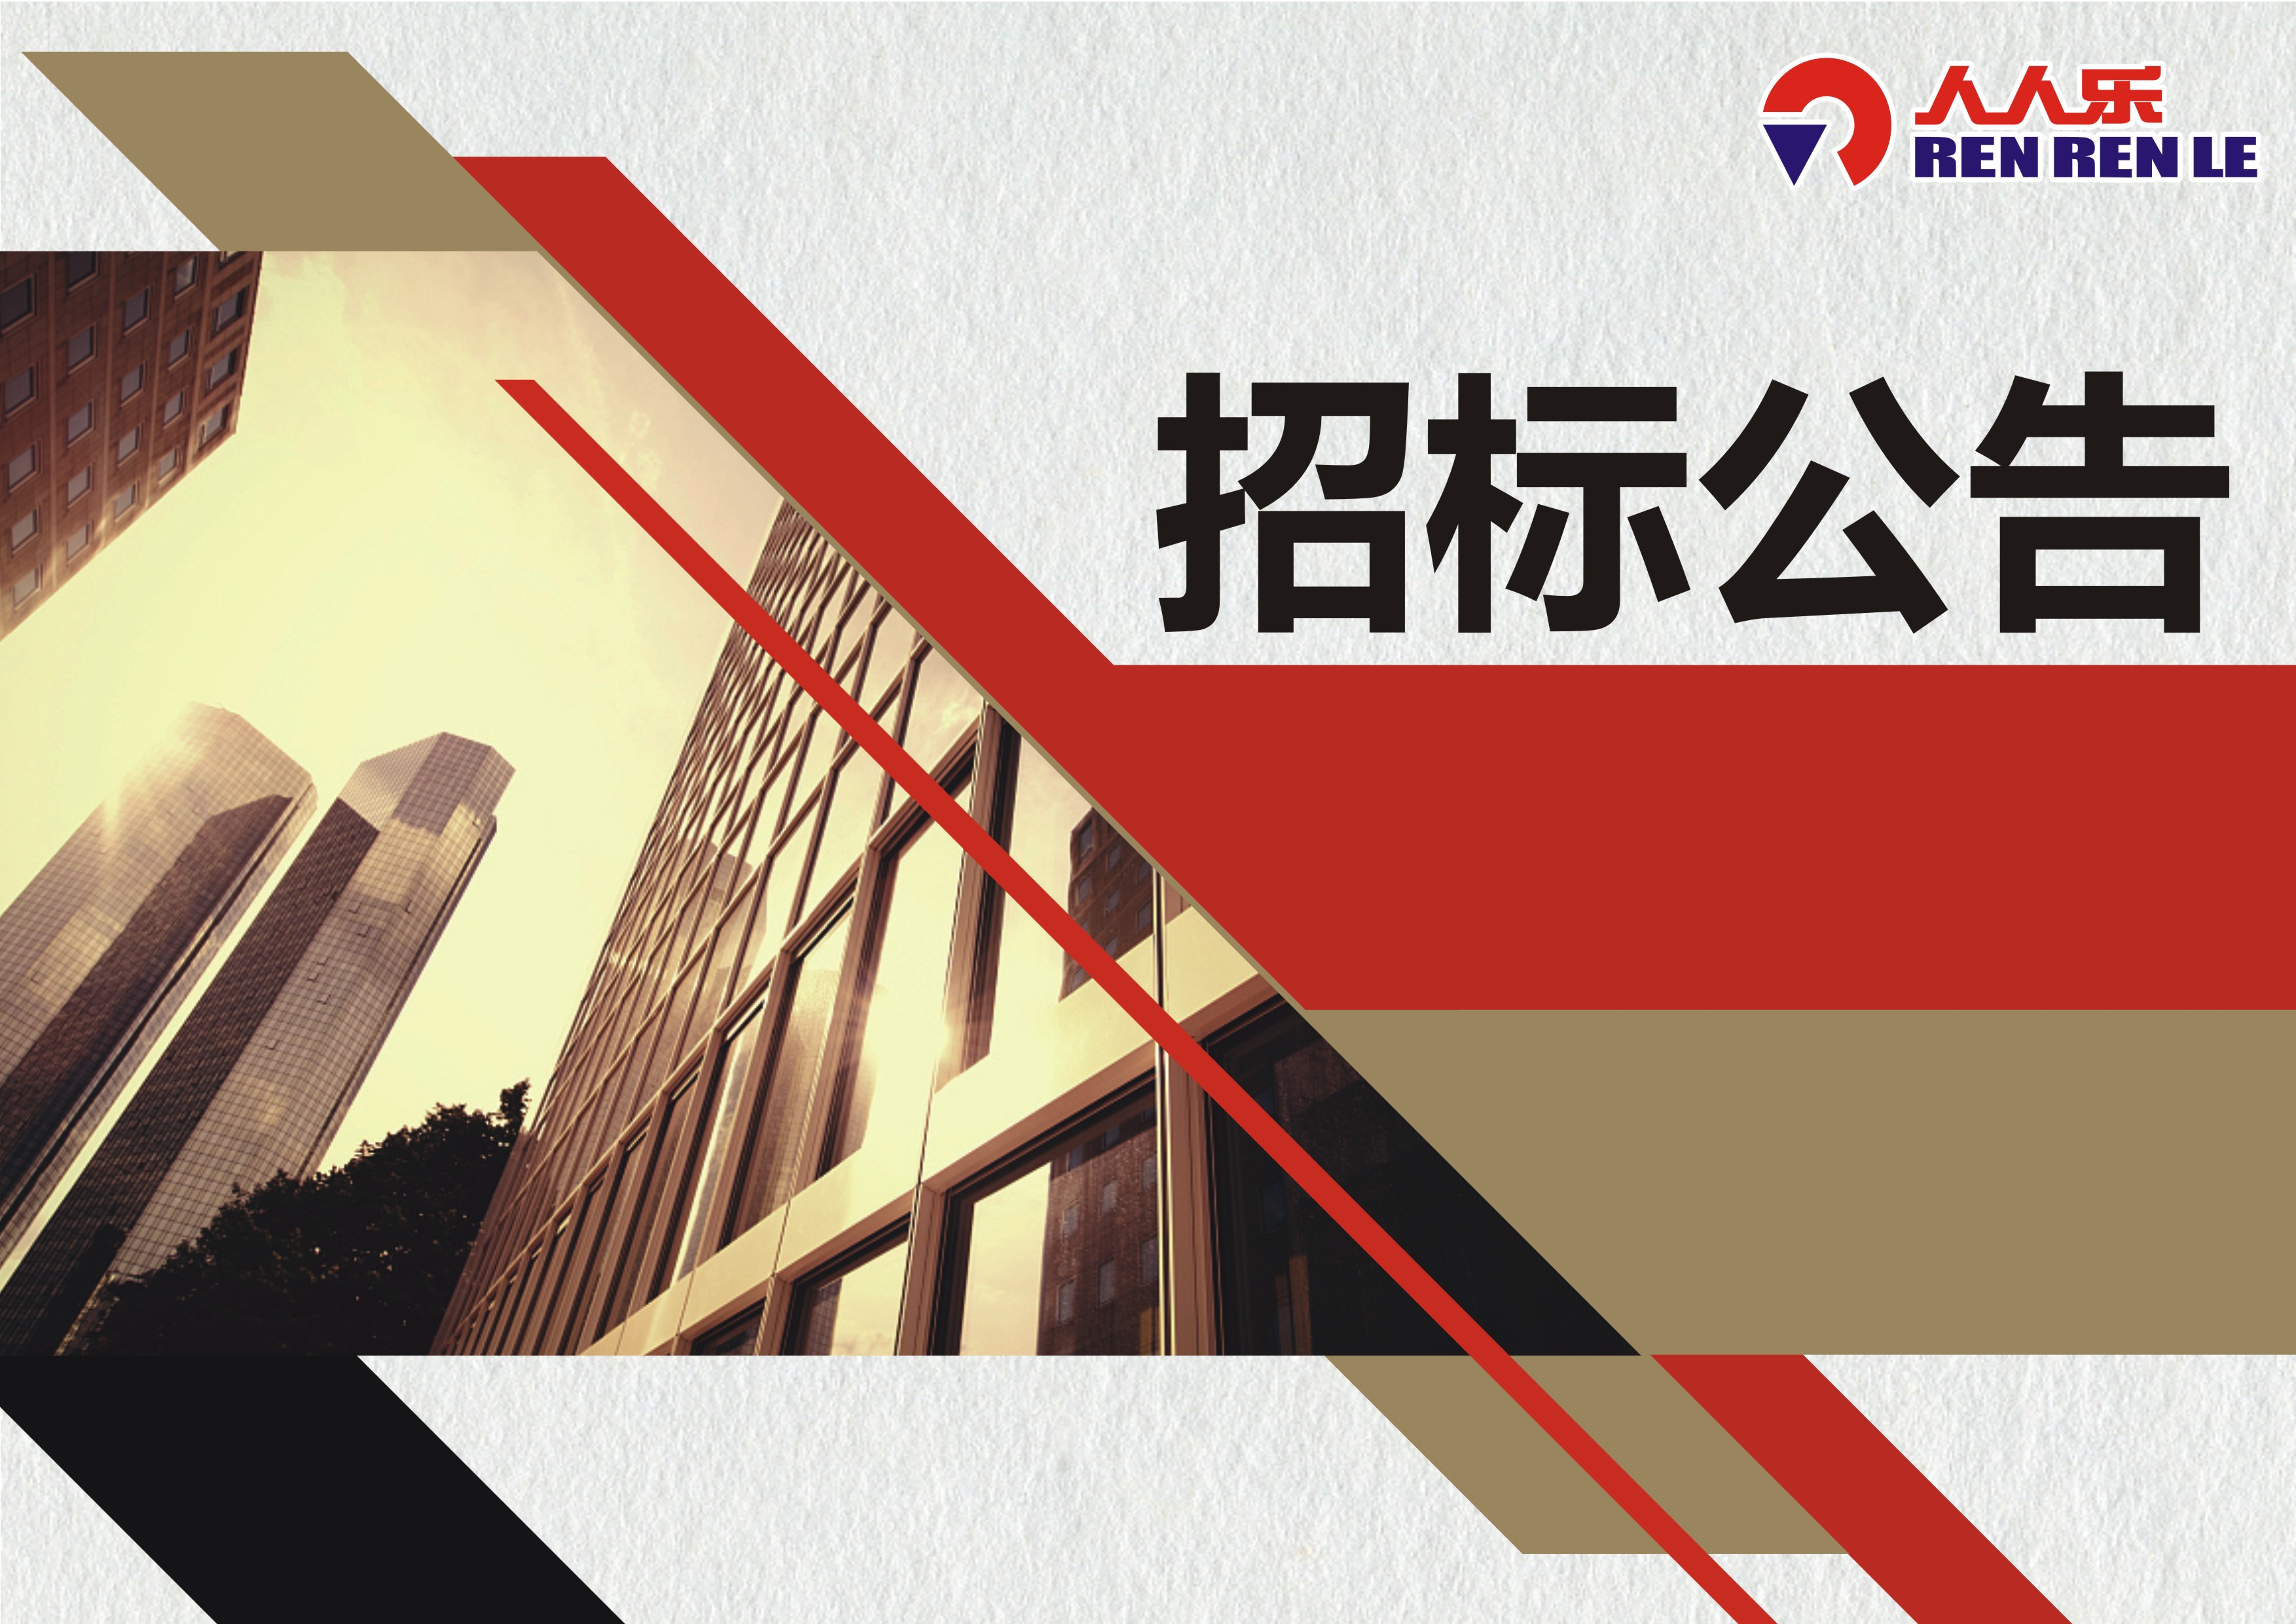 深圳市人人乐商业有限公司中央空调通风系统清洗、消毒、检测以及超市空气检测项目招标书